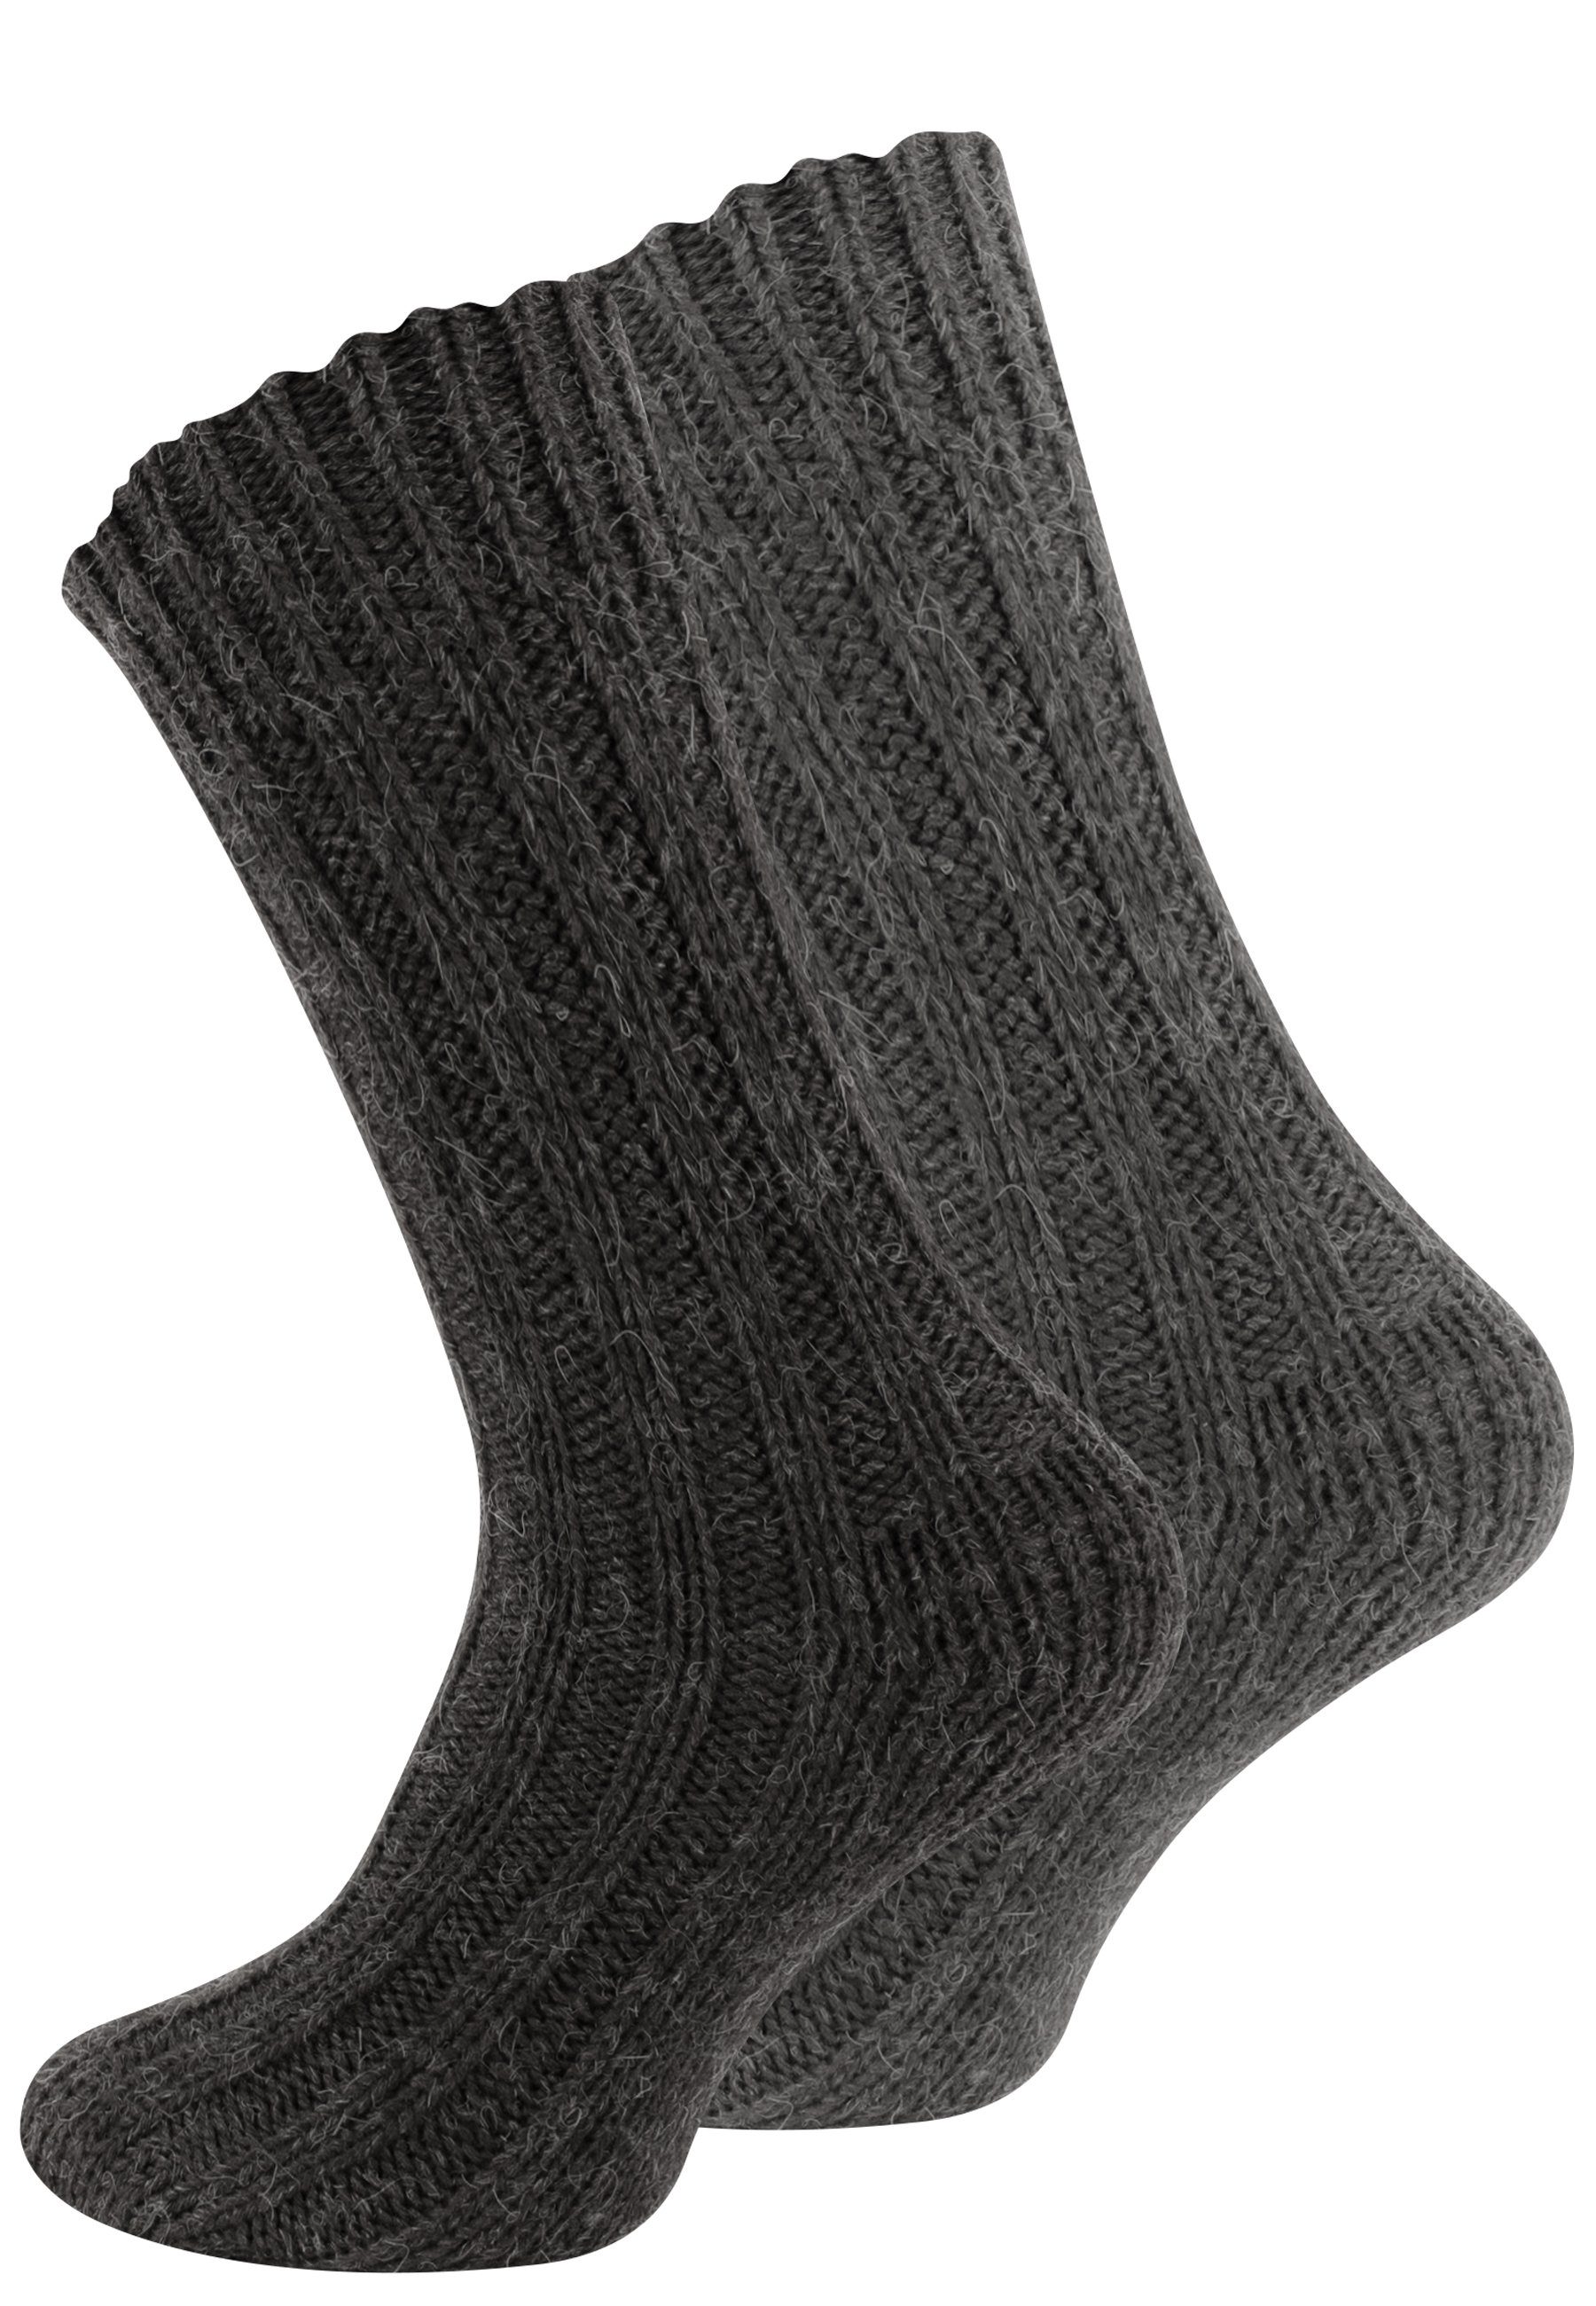 Cotton Prime® Socken Unisex Alpakasocken (4-Paar) ökologisch gefärbt und vorgewaschen Grau